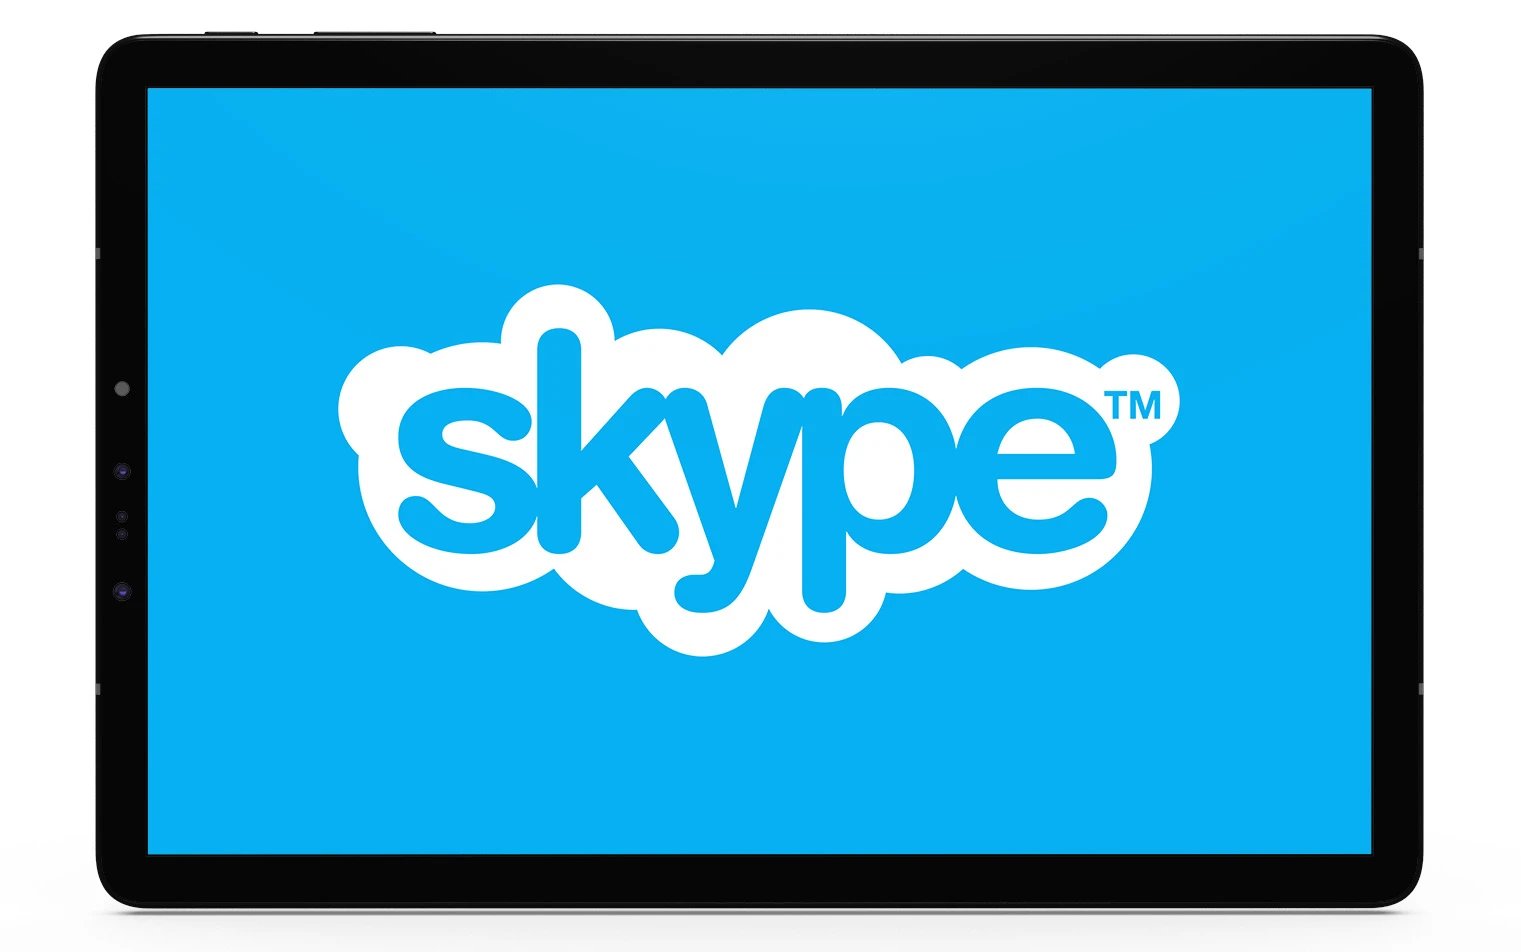 Skype logo displayed in a tablet frame